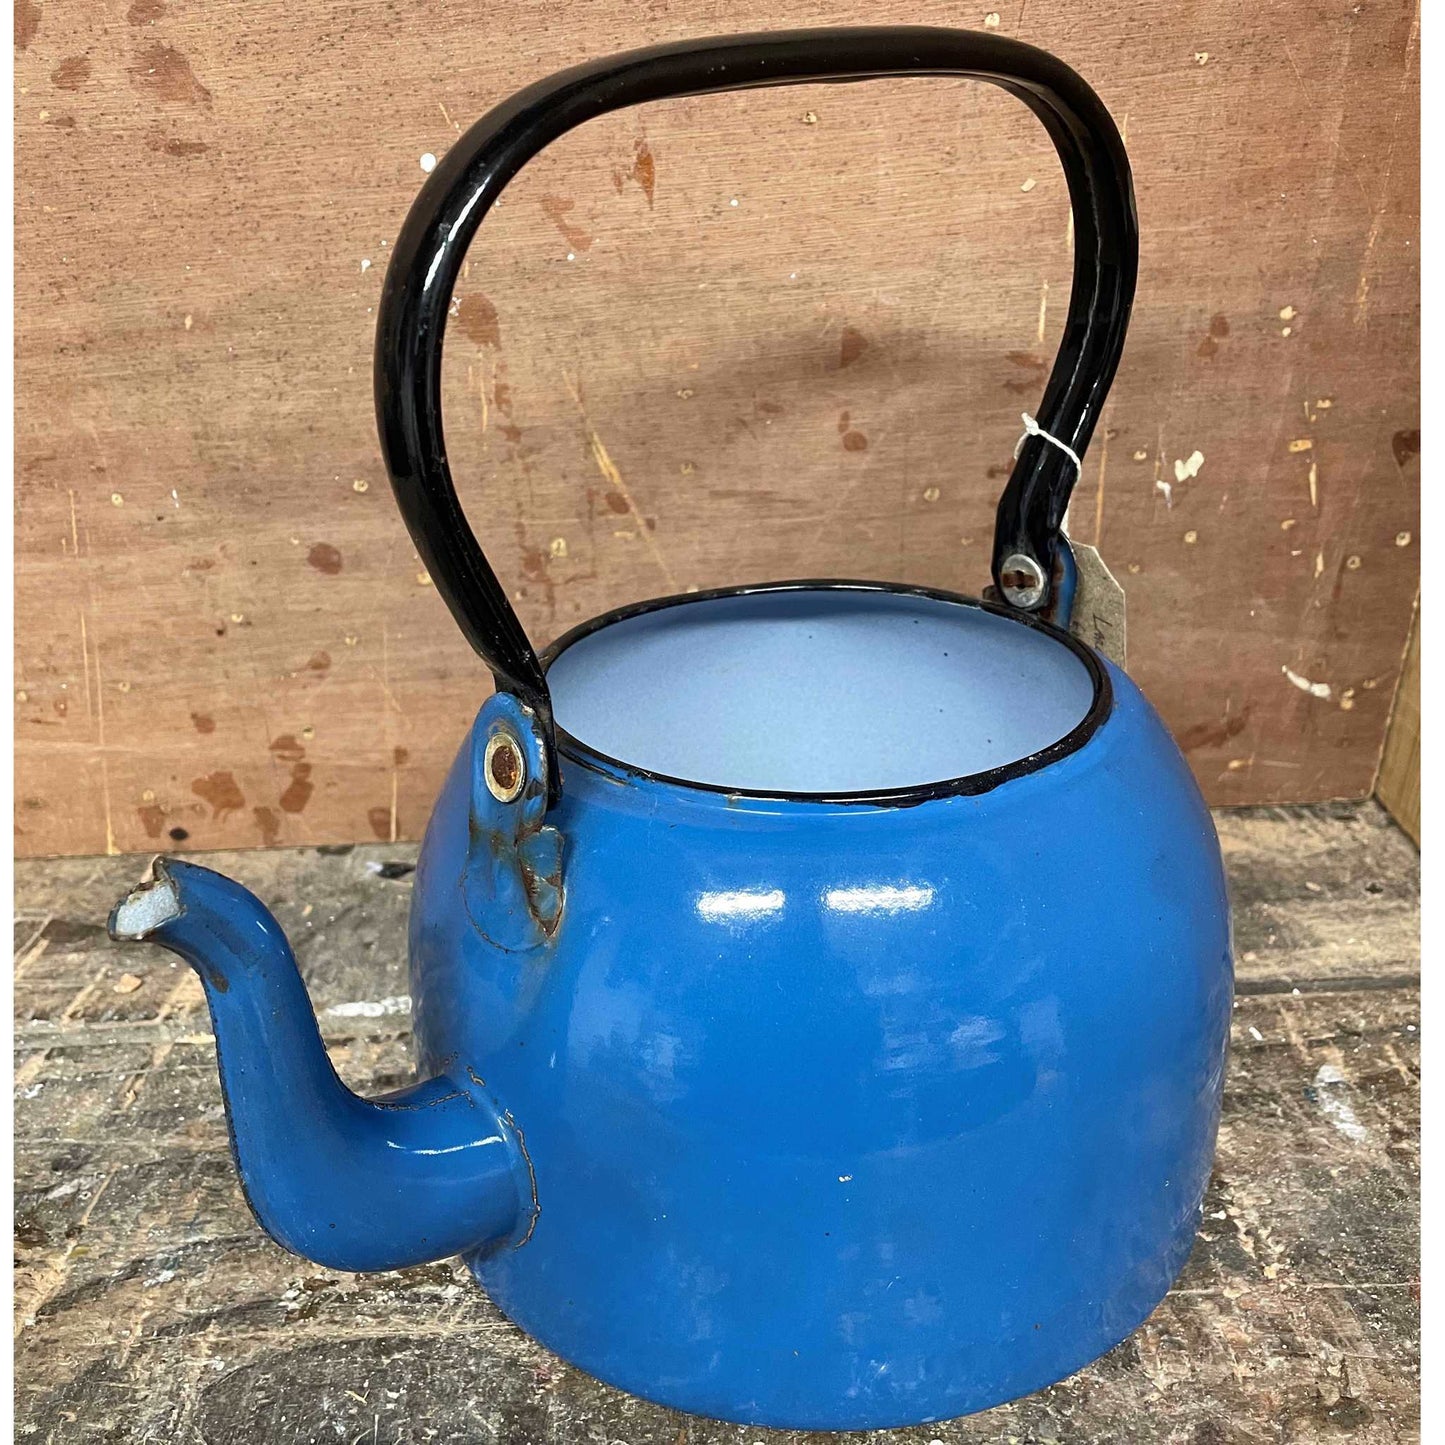 Large vintage blue enamel kettle.